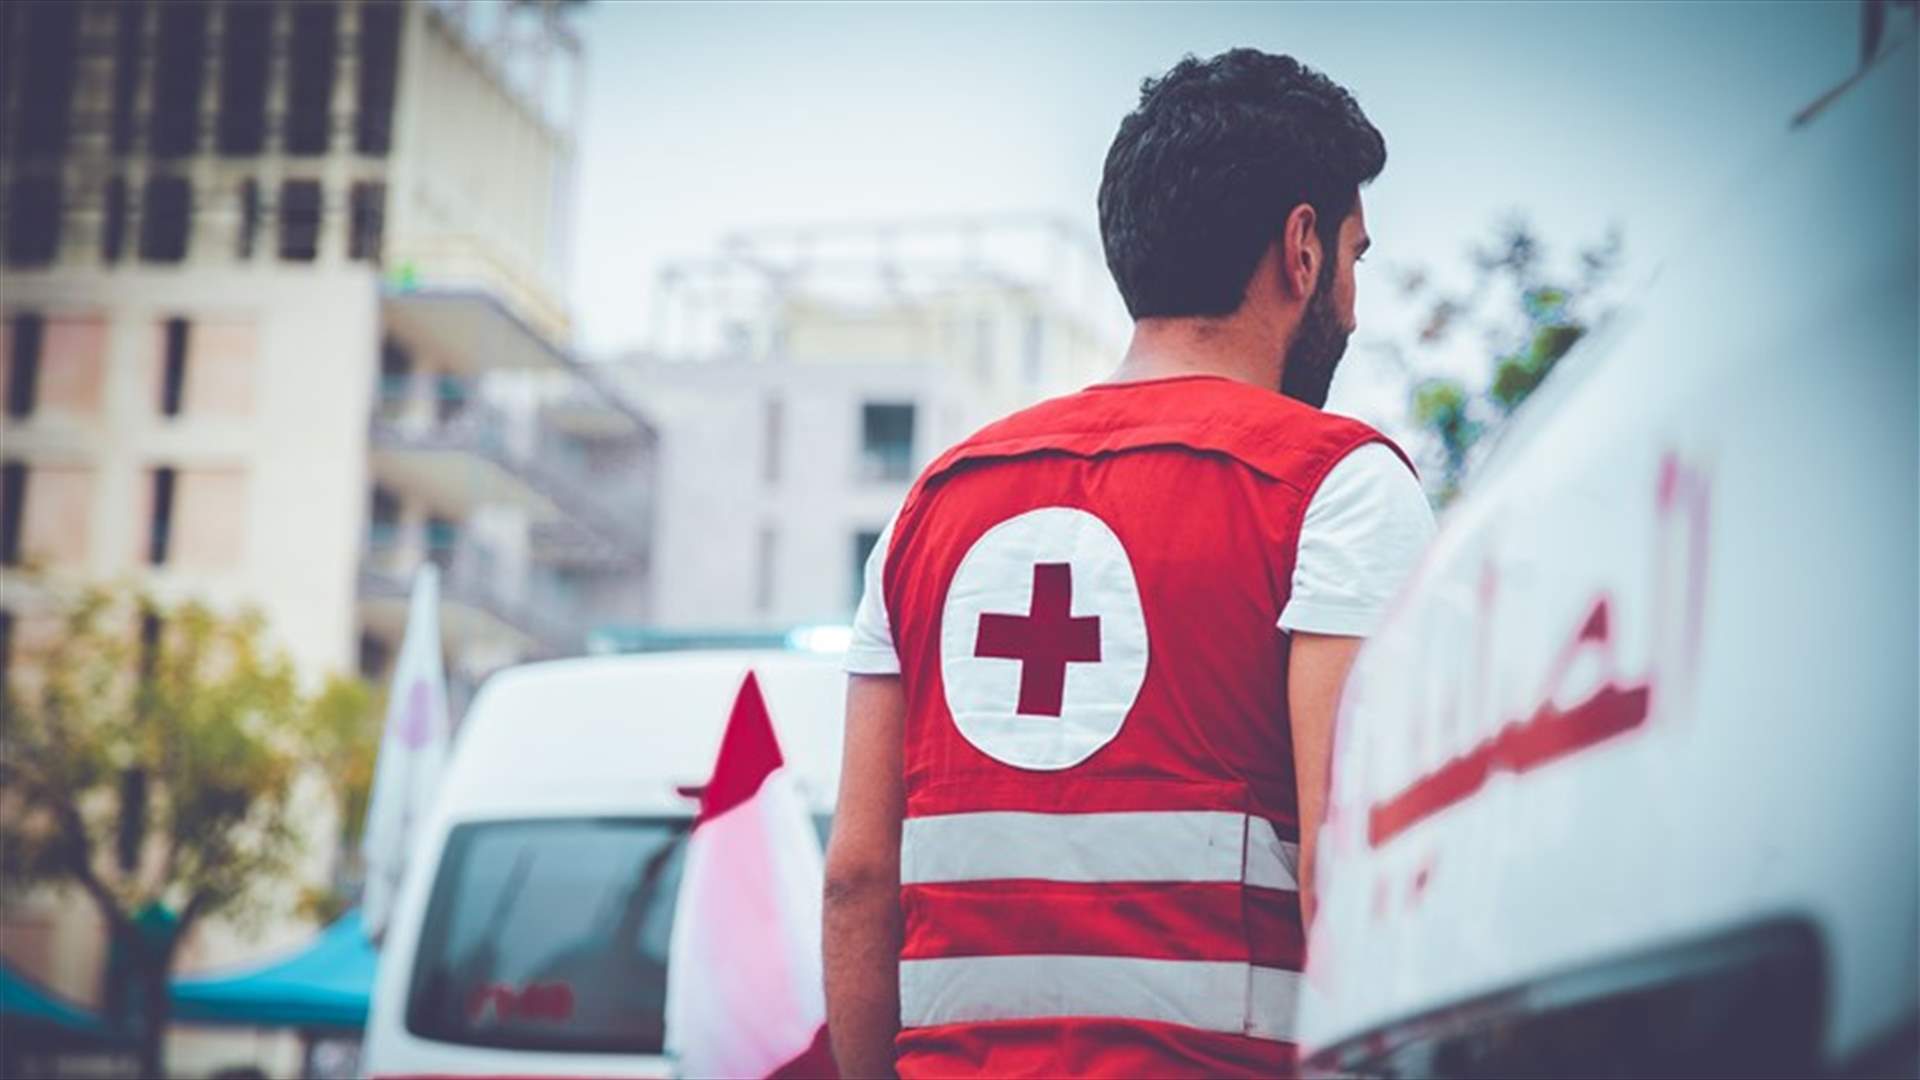 الصليب الأحمر نفى تسجيلا منسوبا إليه عن تفجيرات محتملة